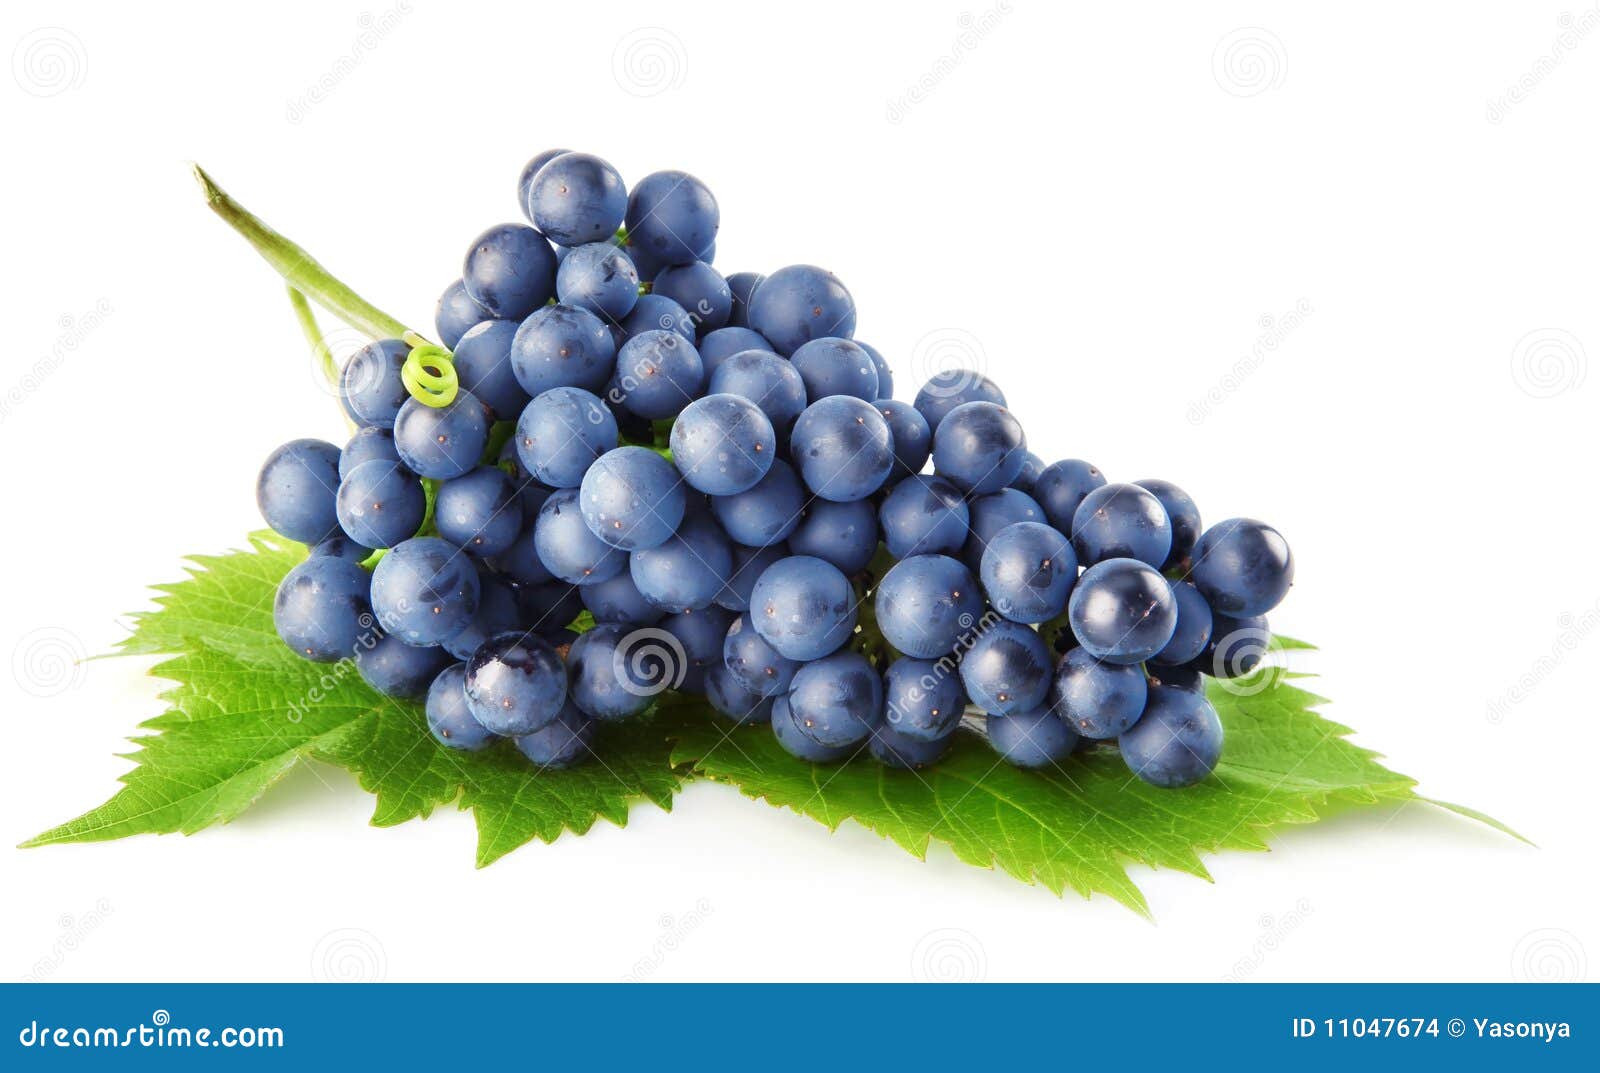 Błękit owocowa winogrona zieleń odizolowywał liść